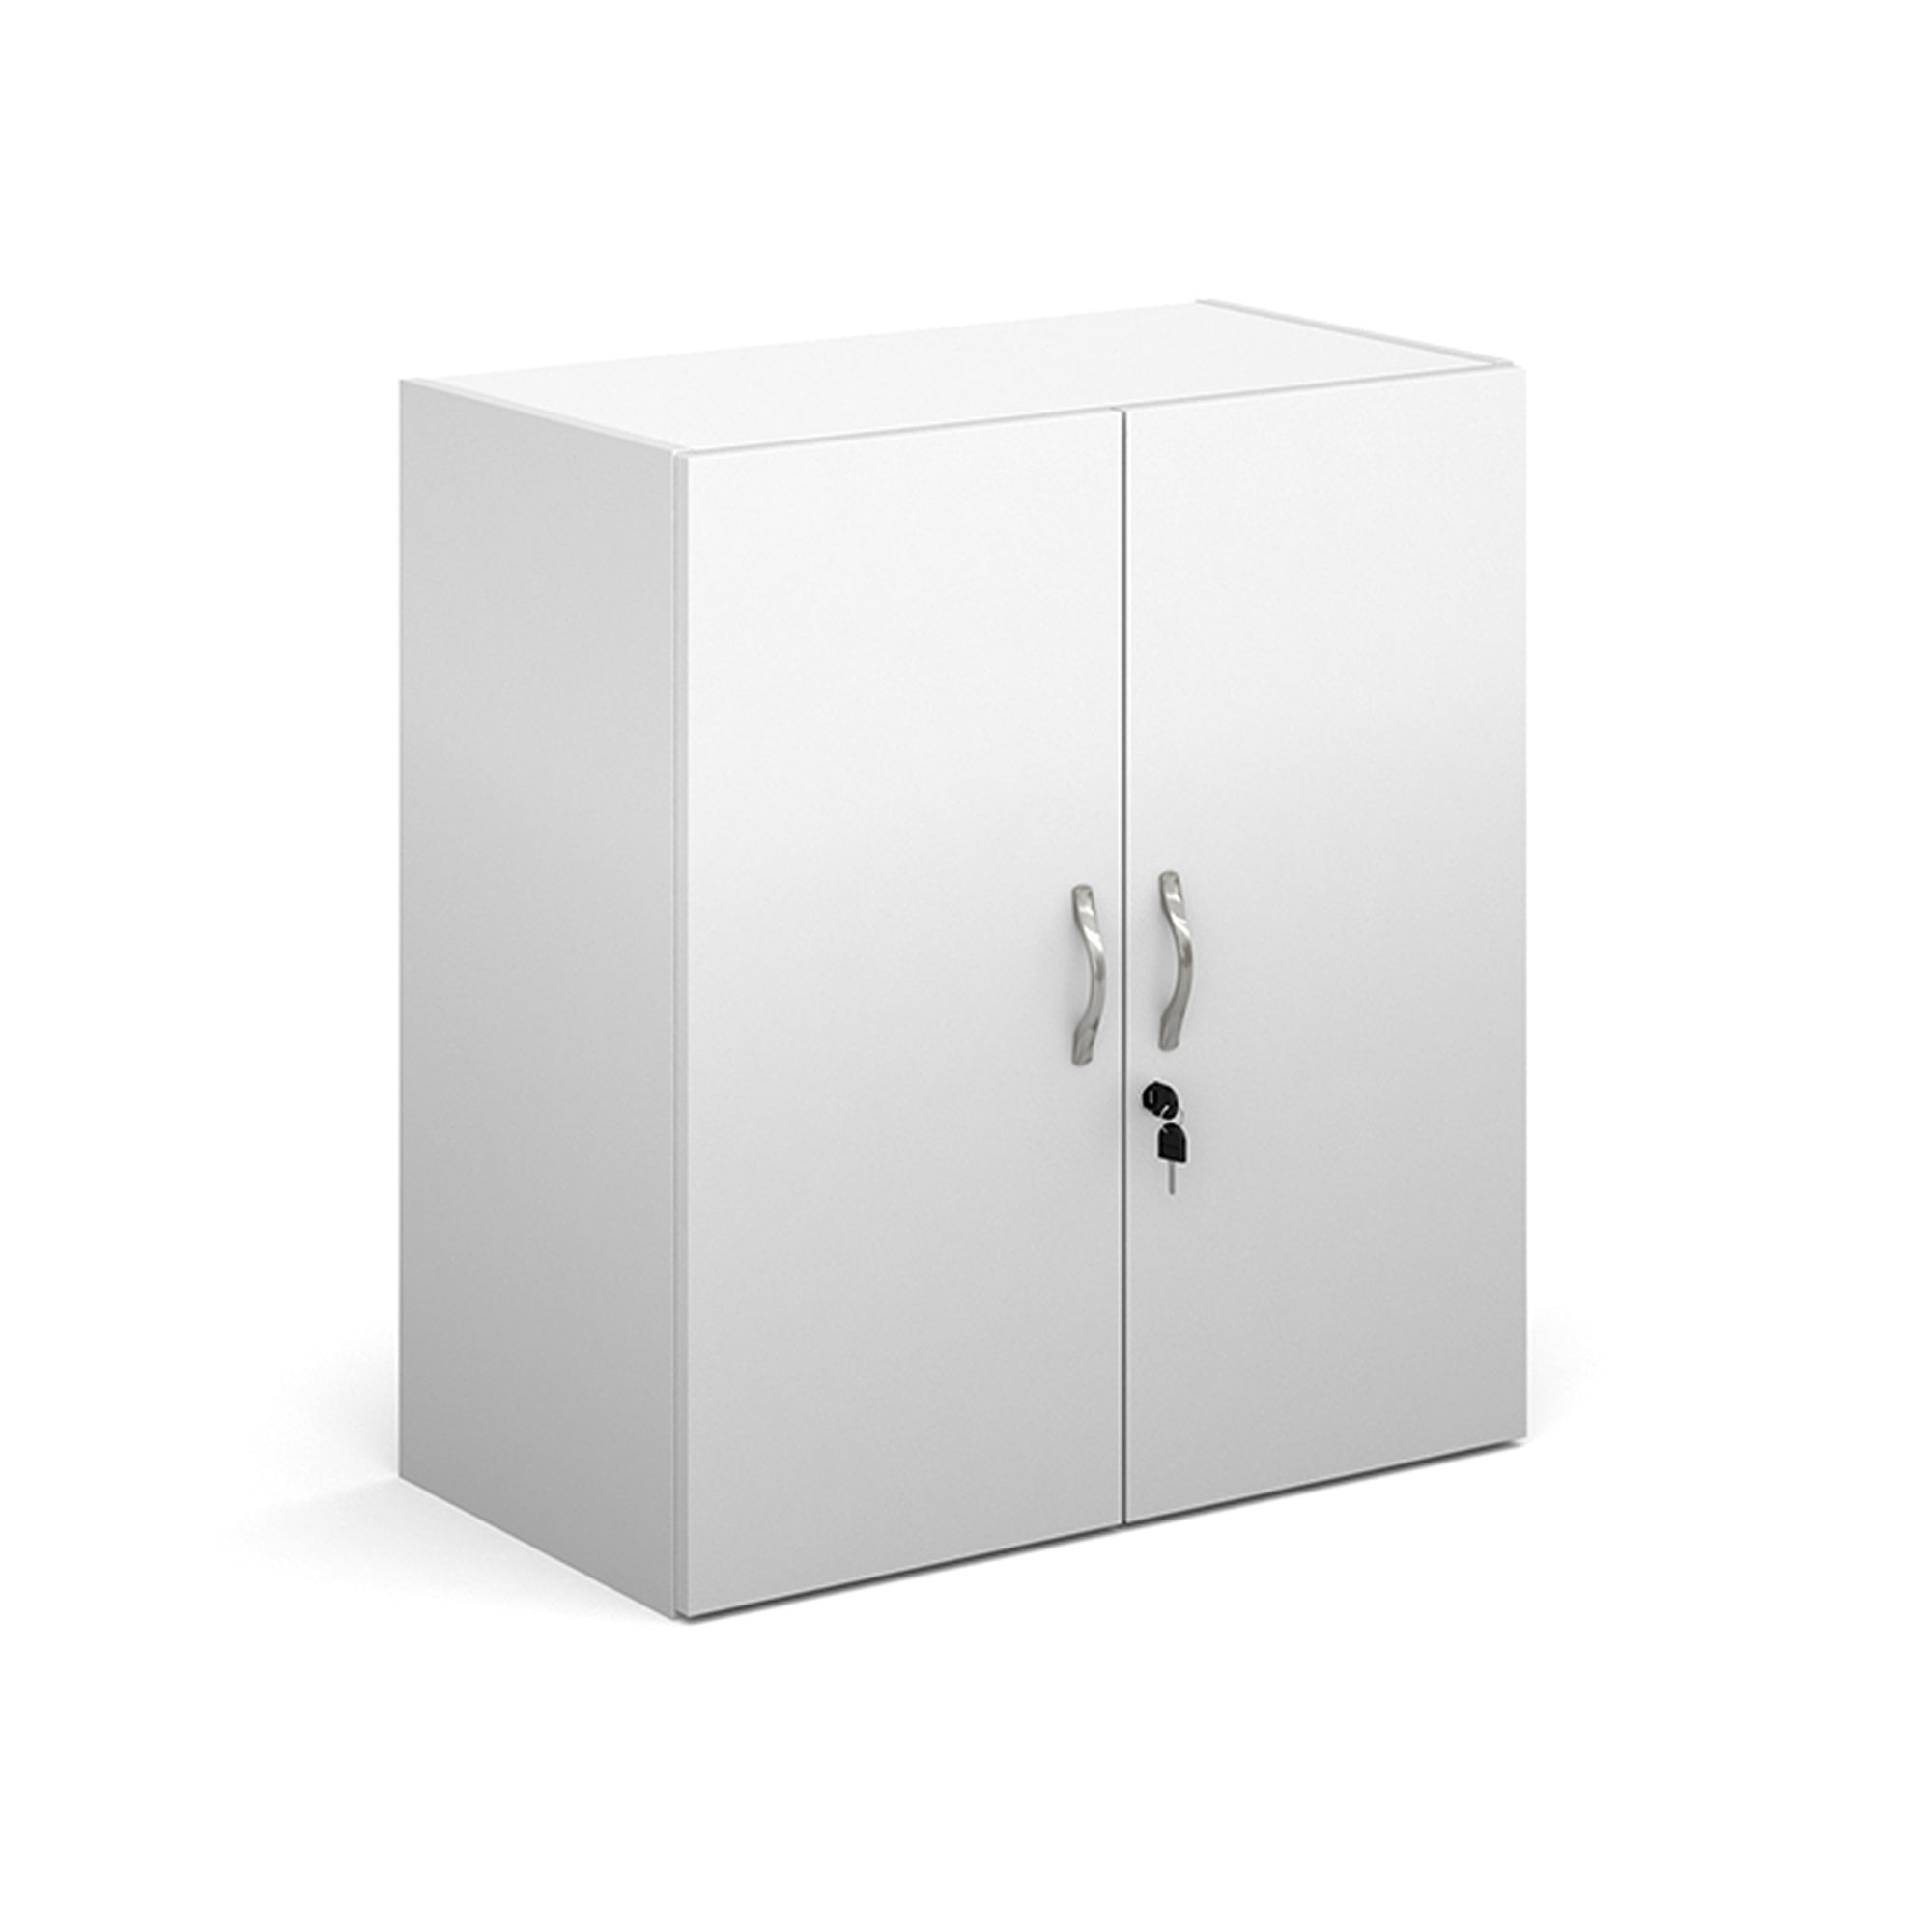 Contract double door cupboard - Office Products Online